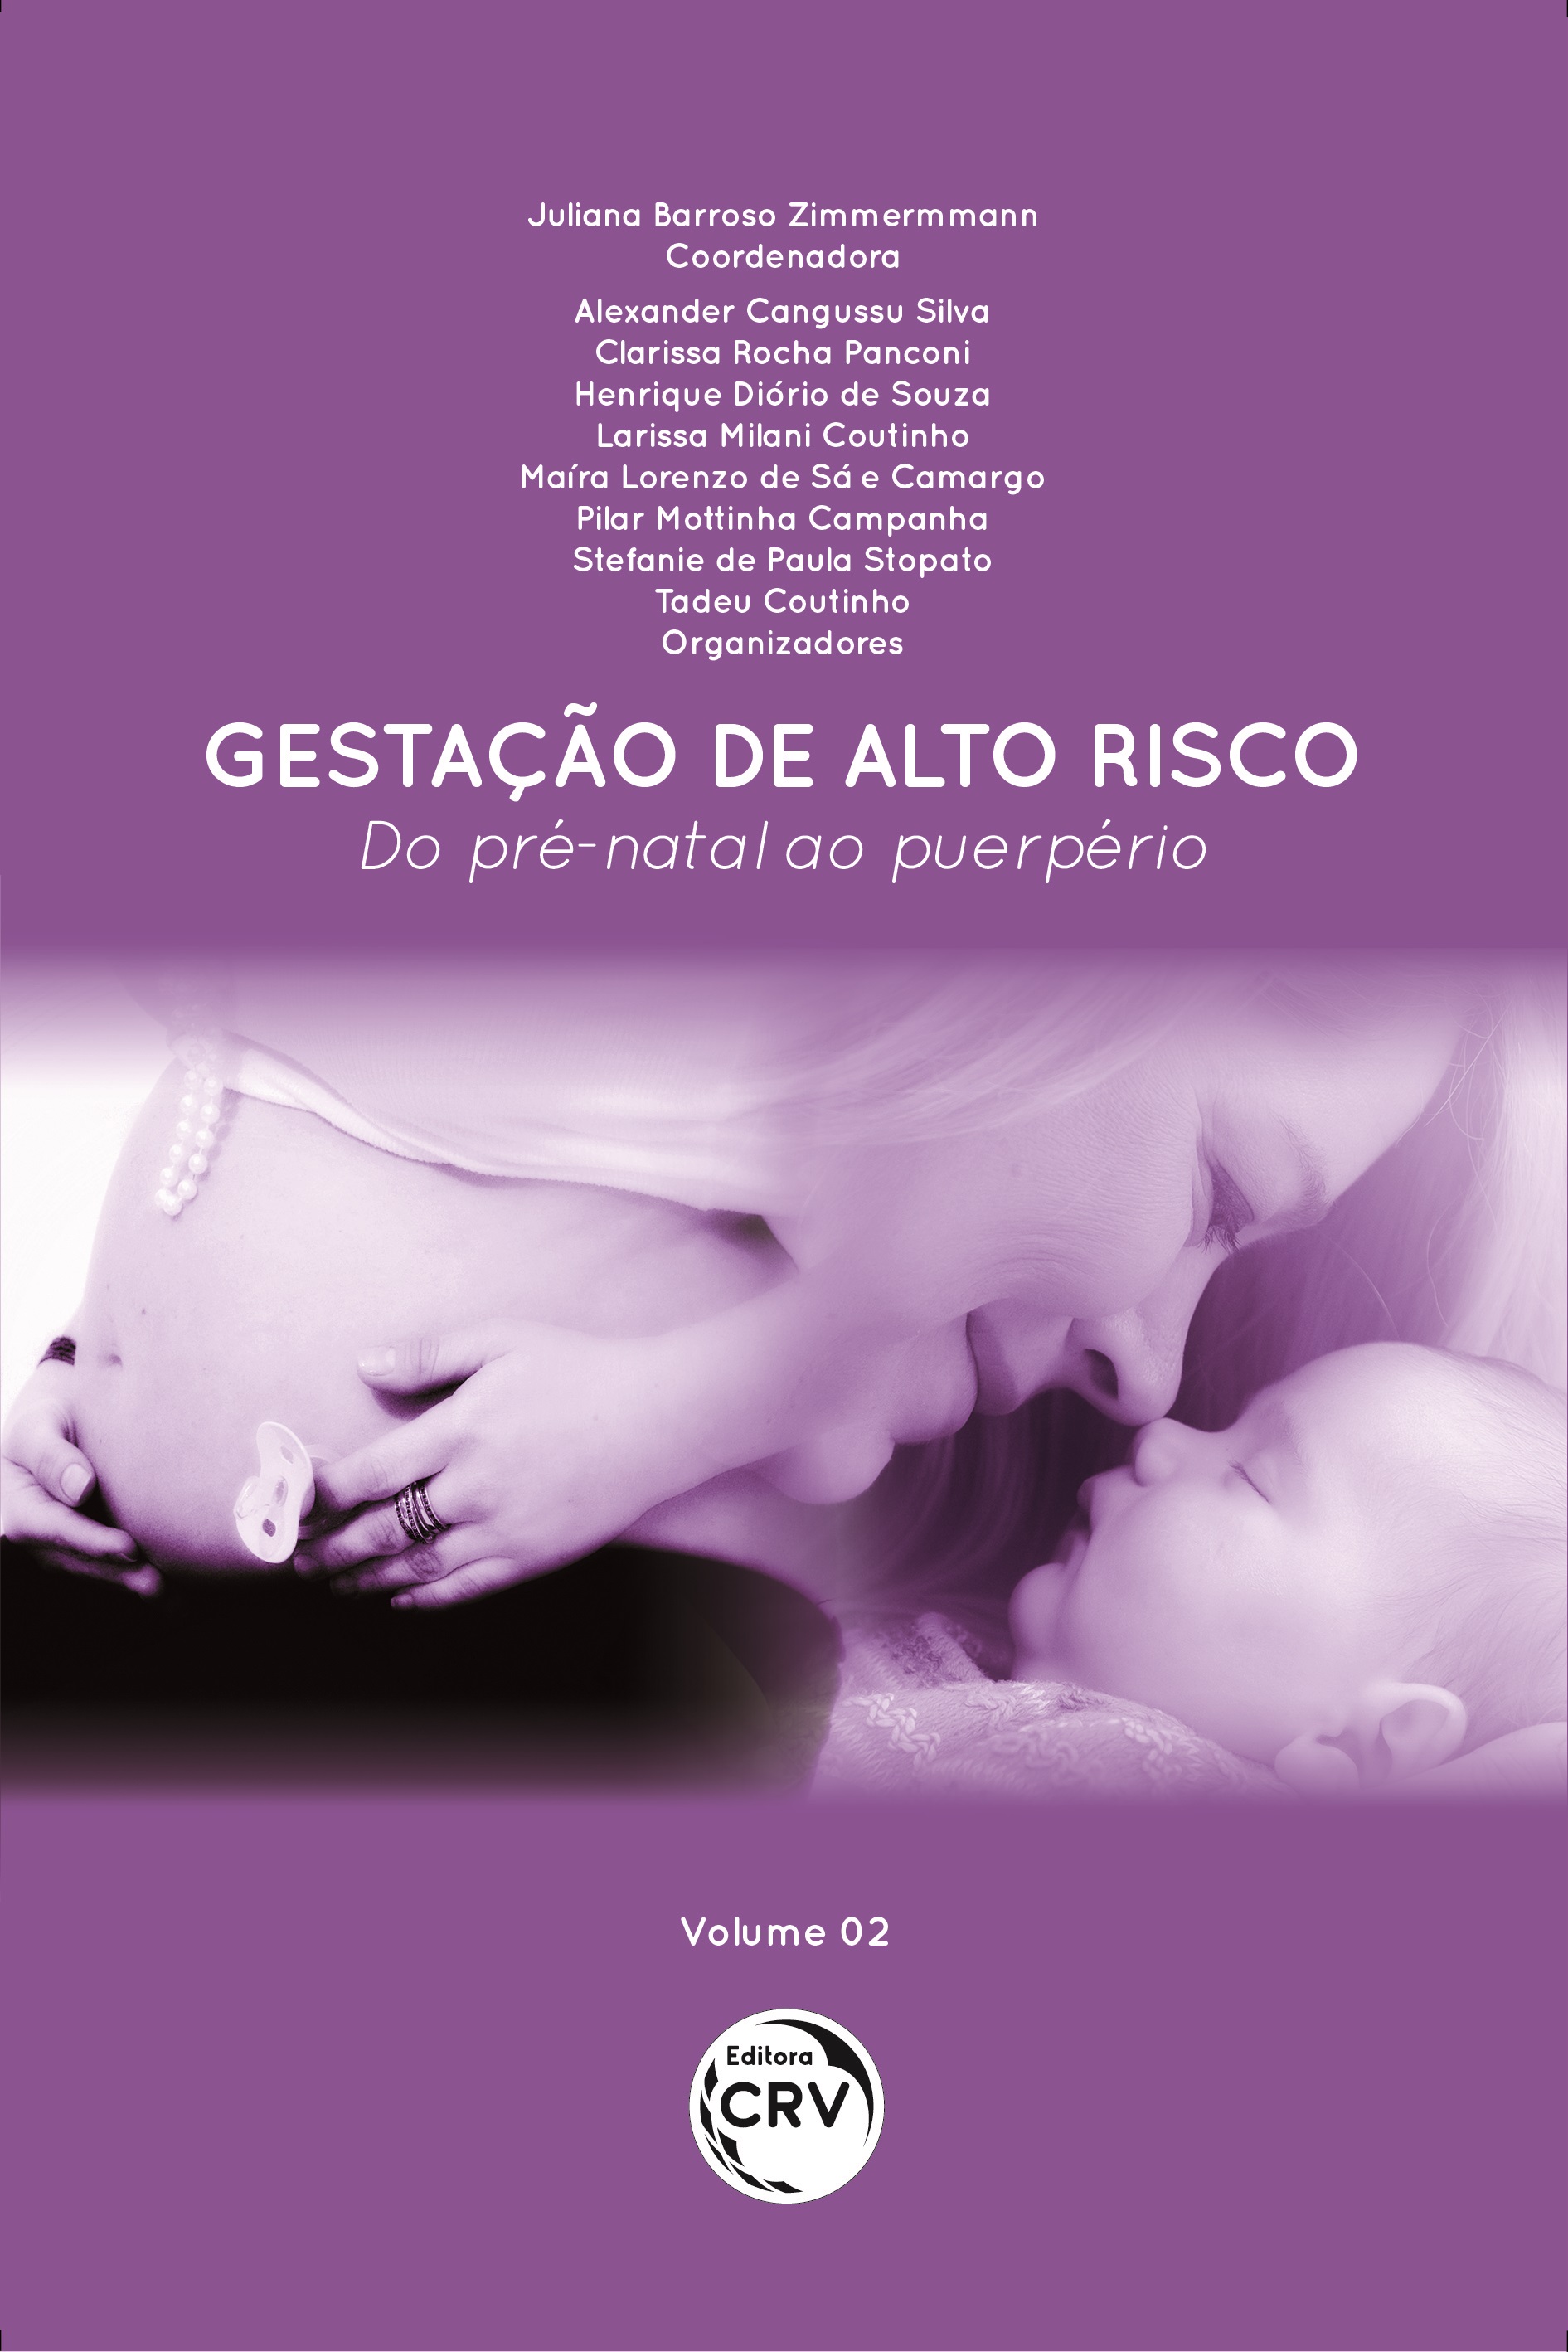 GESTAÇÃO DE ALTO RISCO: Do pré-natal ao puerpério Volume 02